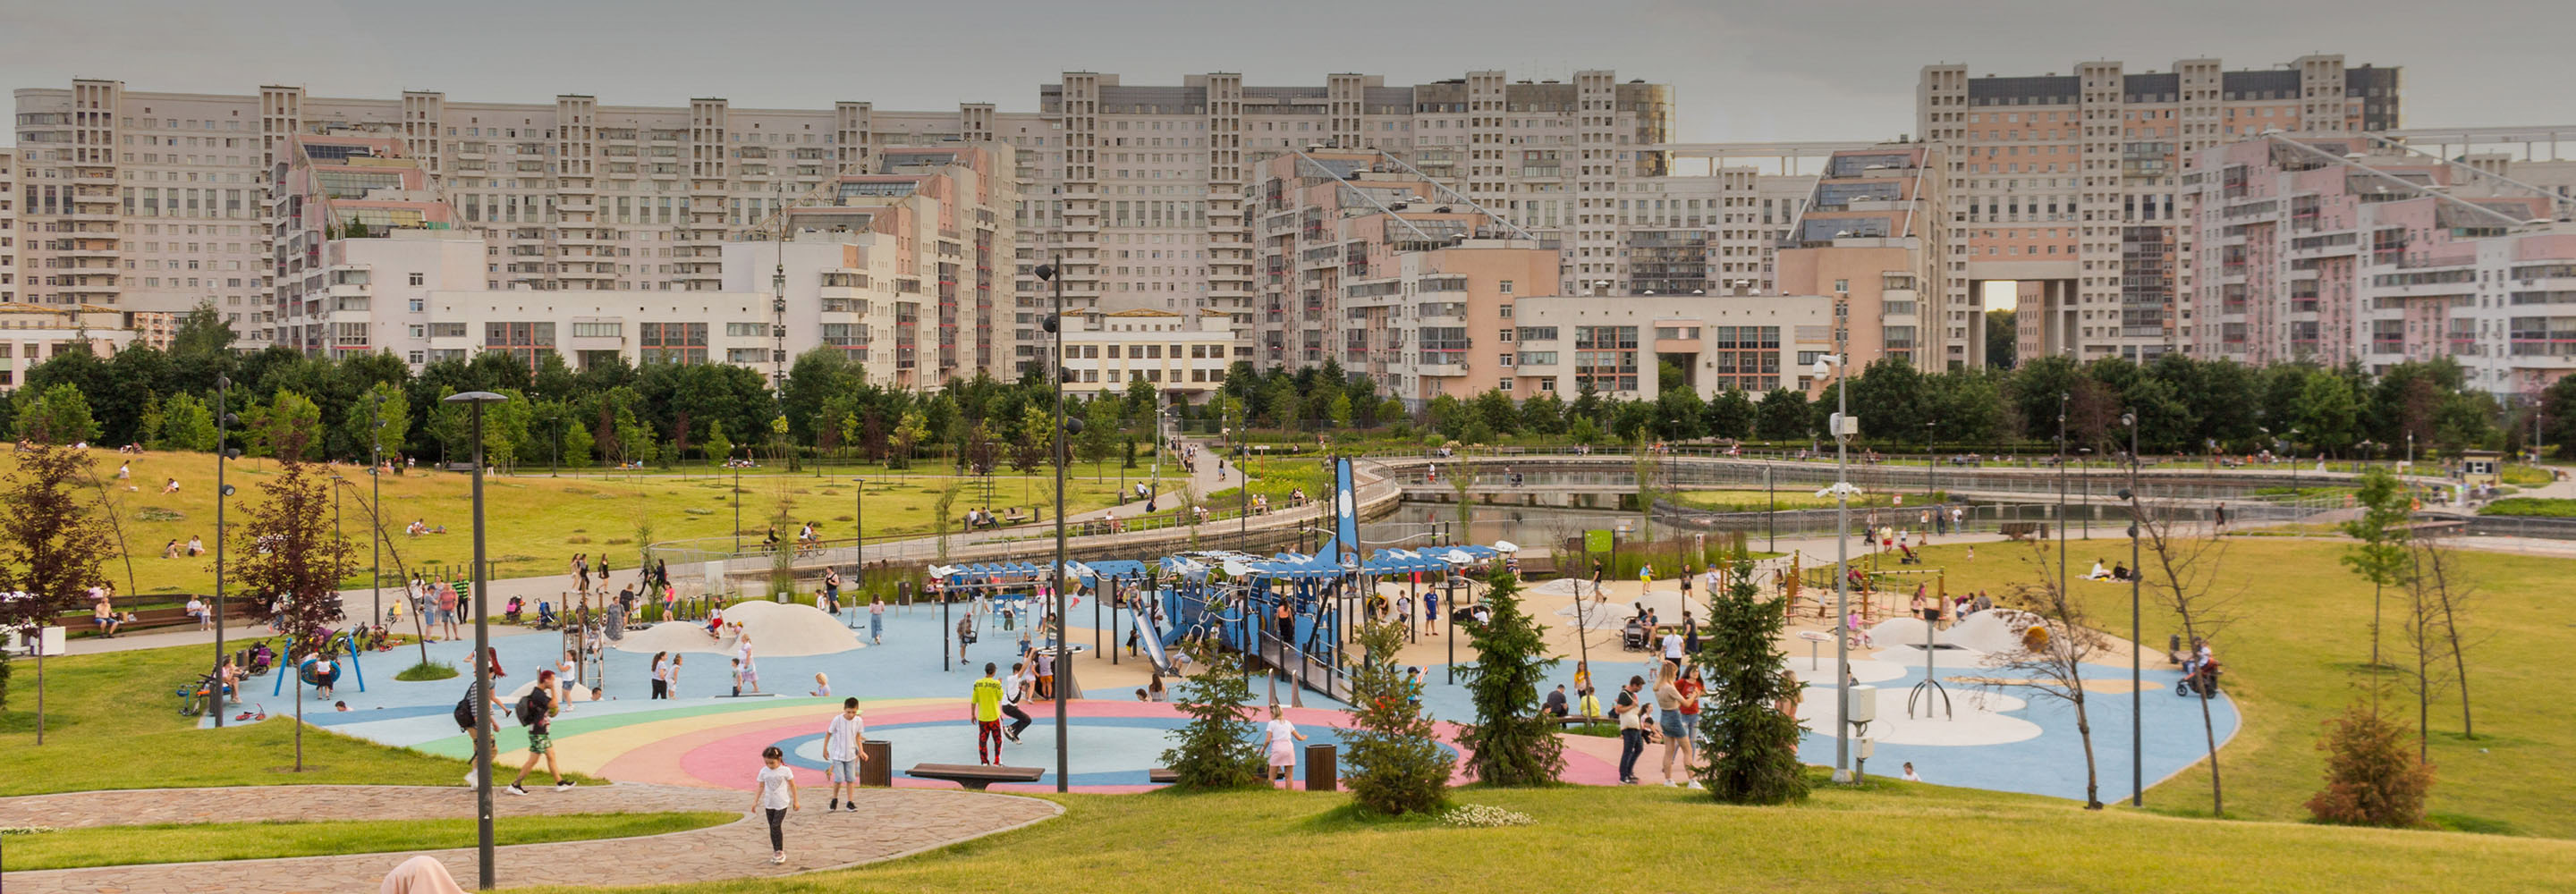 Для тех, кому надоели «Зарядье» и парк Горького: 16 любопытных парков Москвы